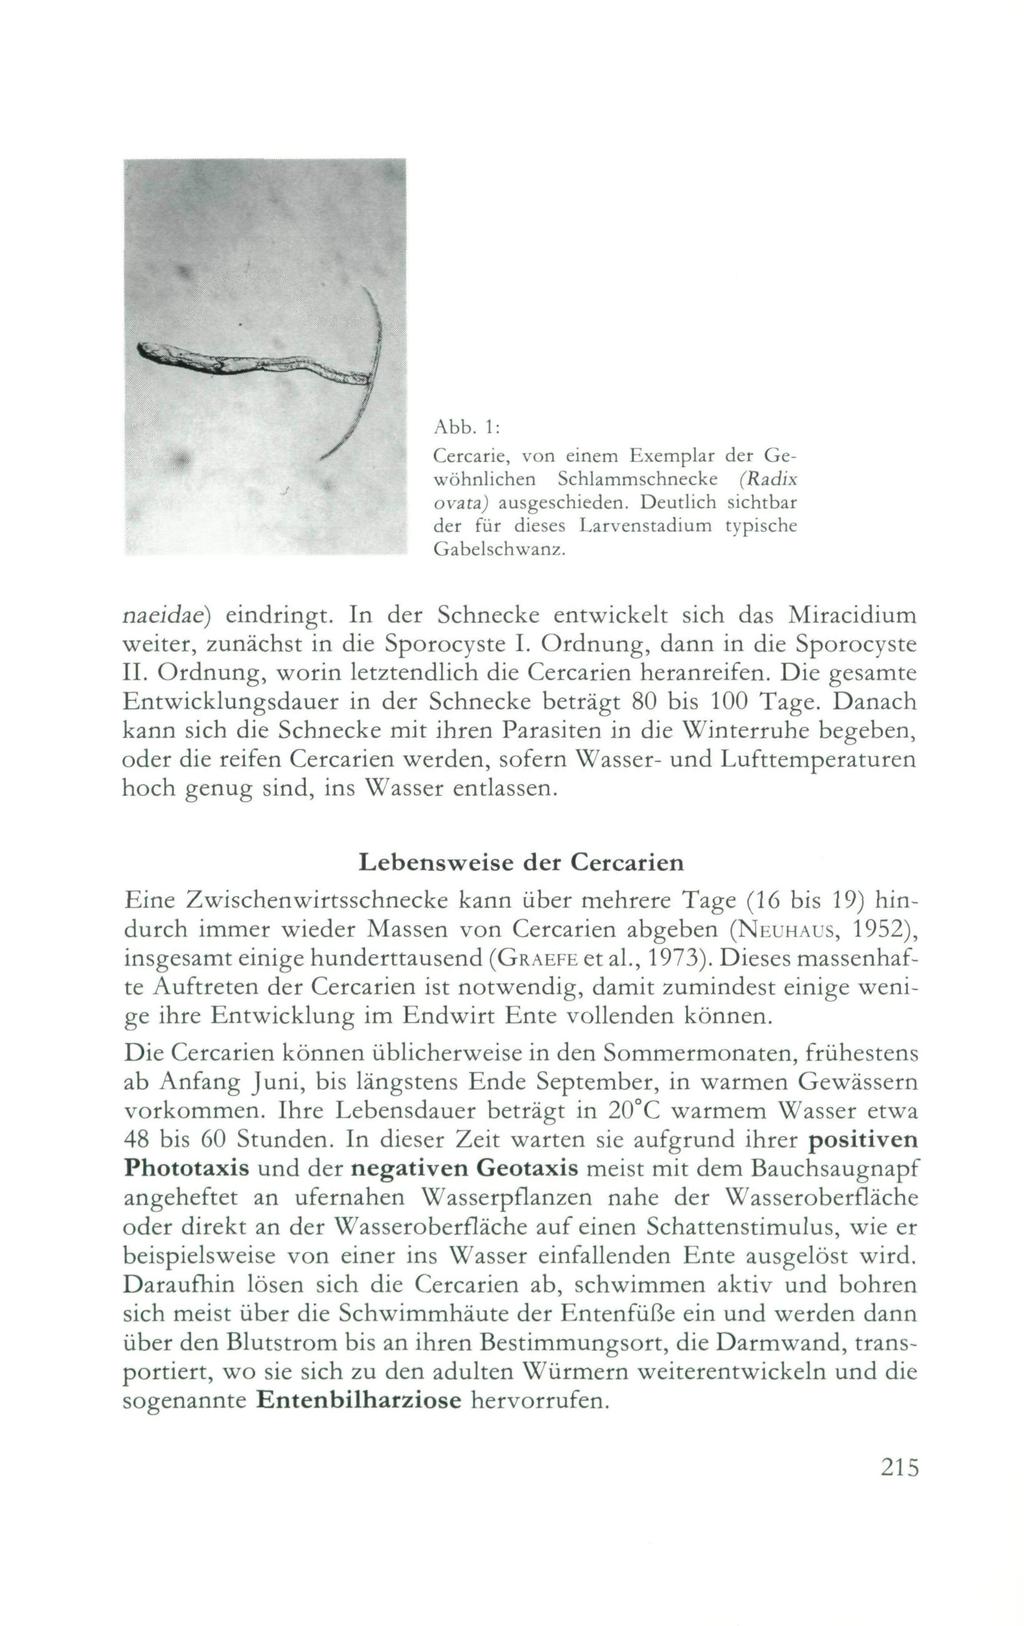 Abb. : Cercarie, von einem Exemplar der Gewöhnlichen Schlammschnecke (Radix ovata) ausgeschieden. Deutlich sichtbar der für dieses Larvenstadium typische Gabelschwanz. naeidae) eindringt.